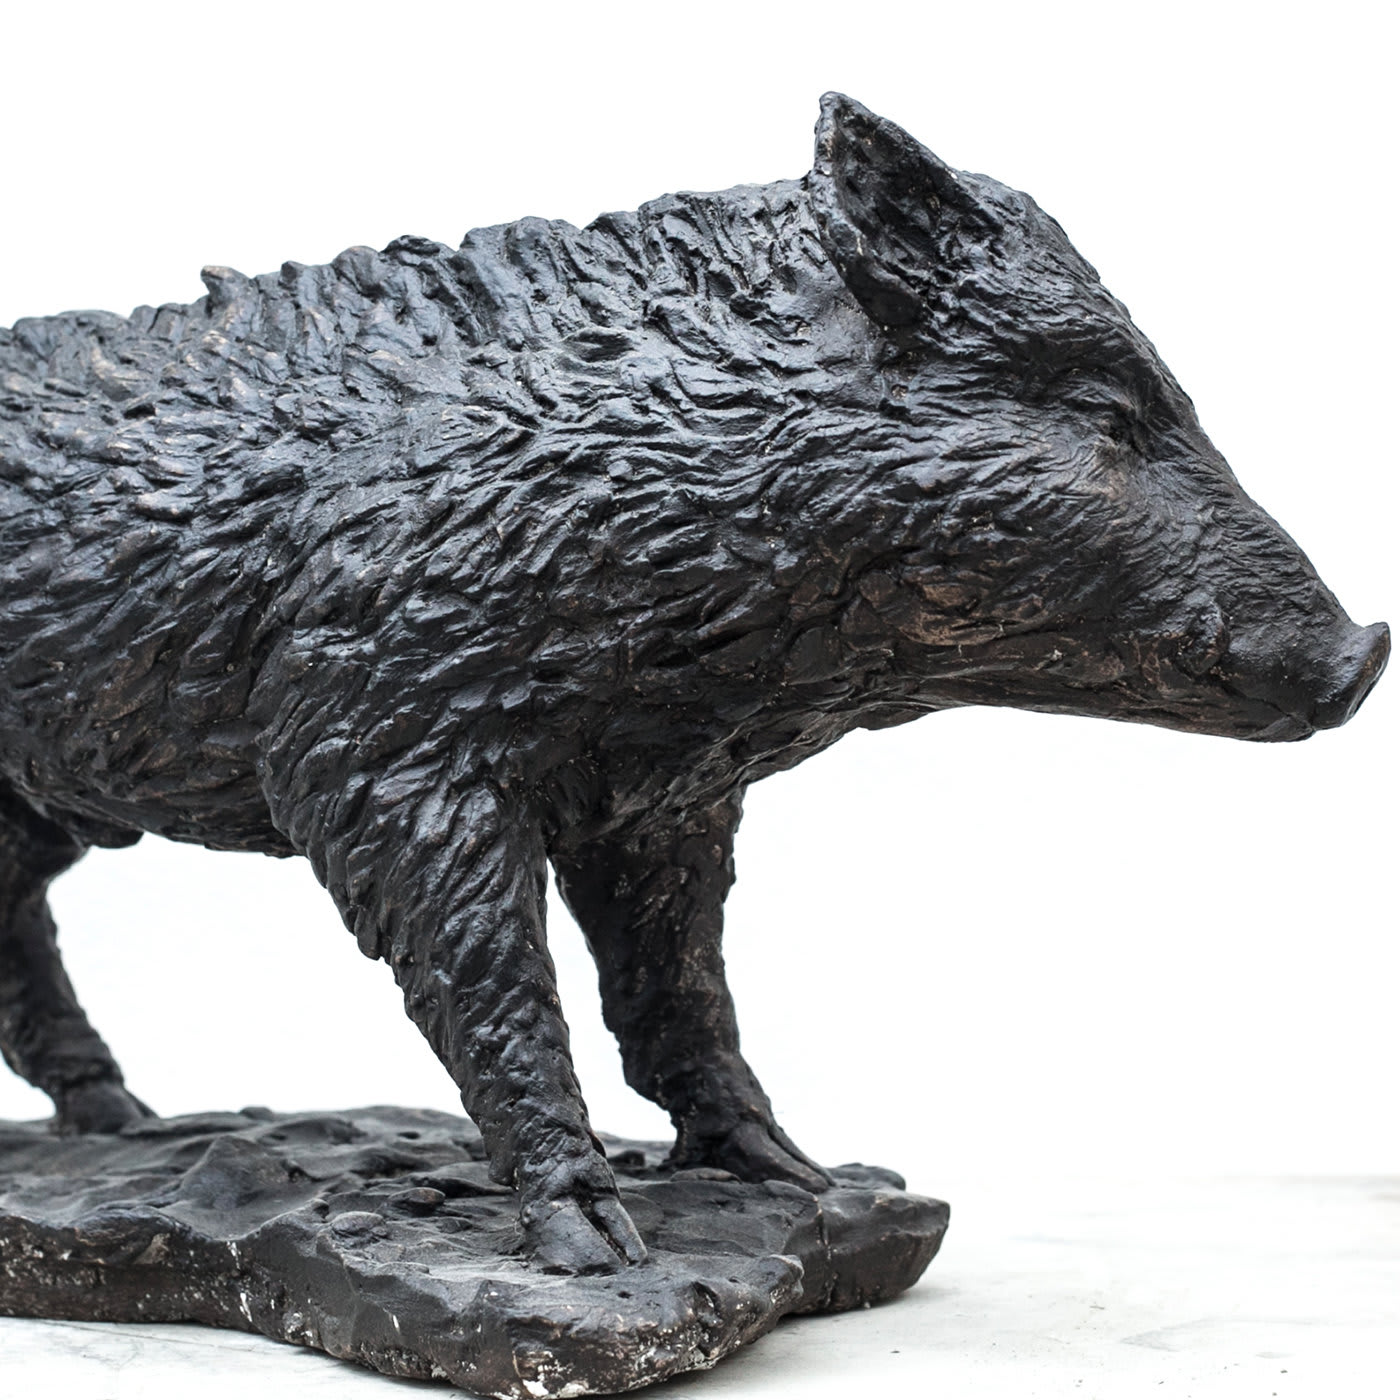 Wild Boar Sculpture - Vincenzo Romanelli